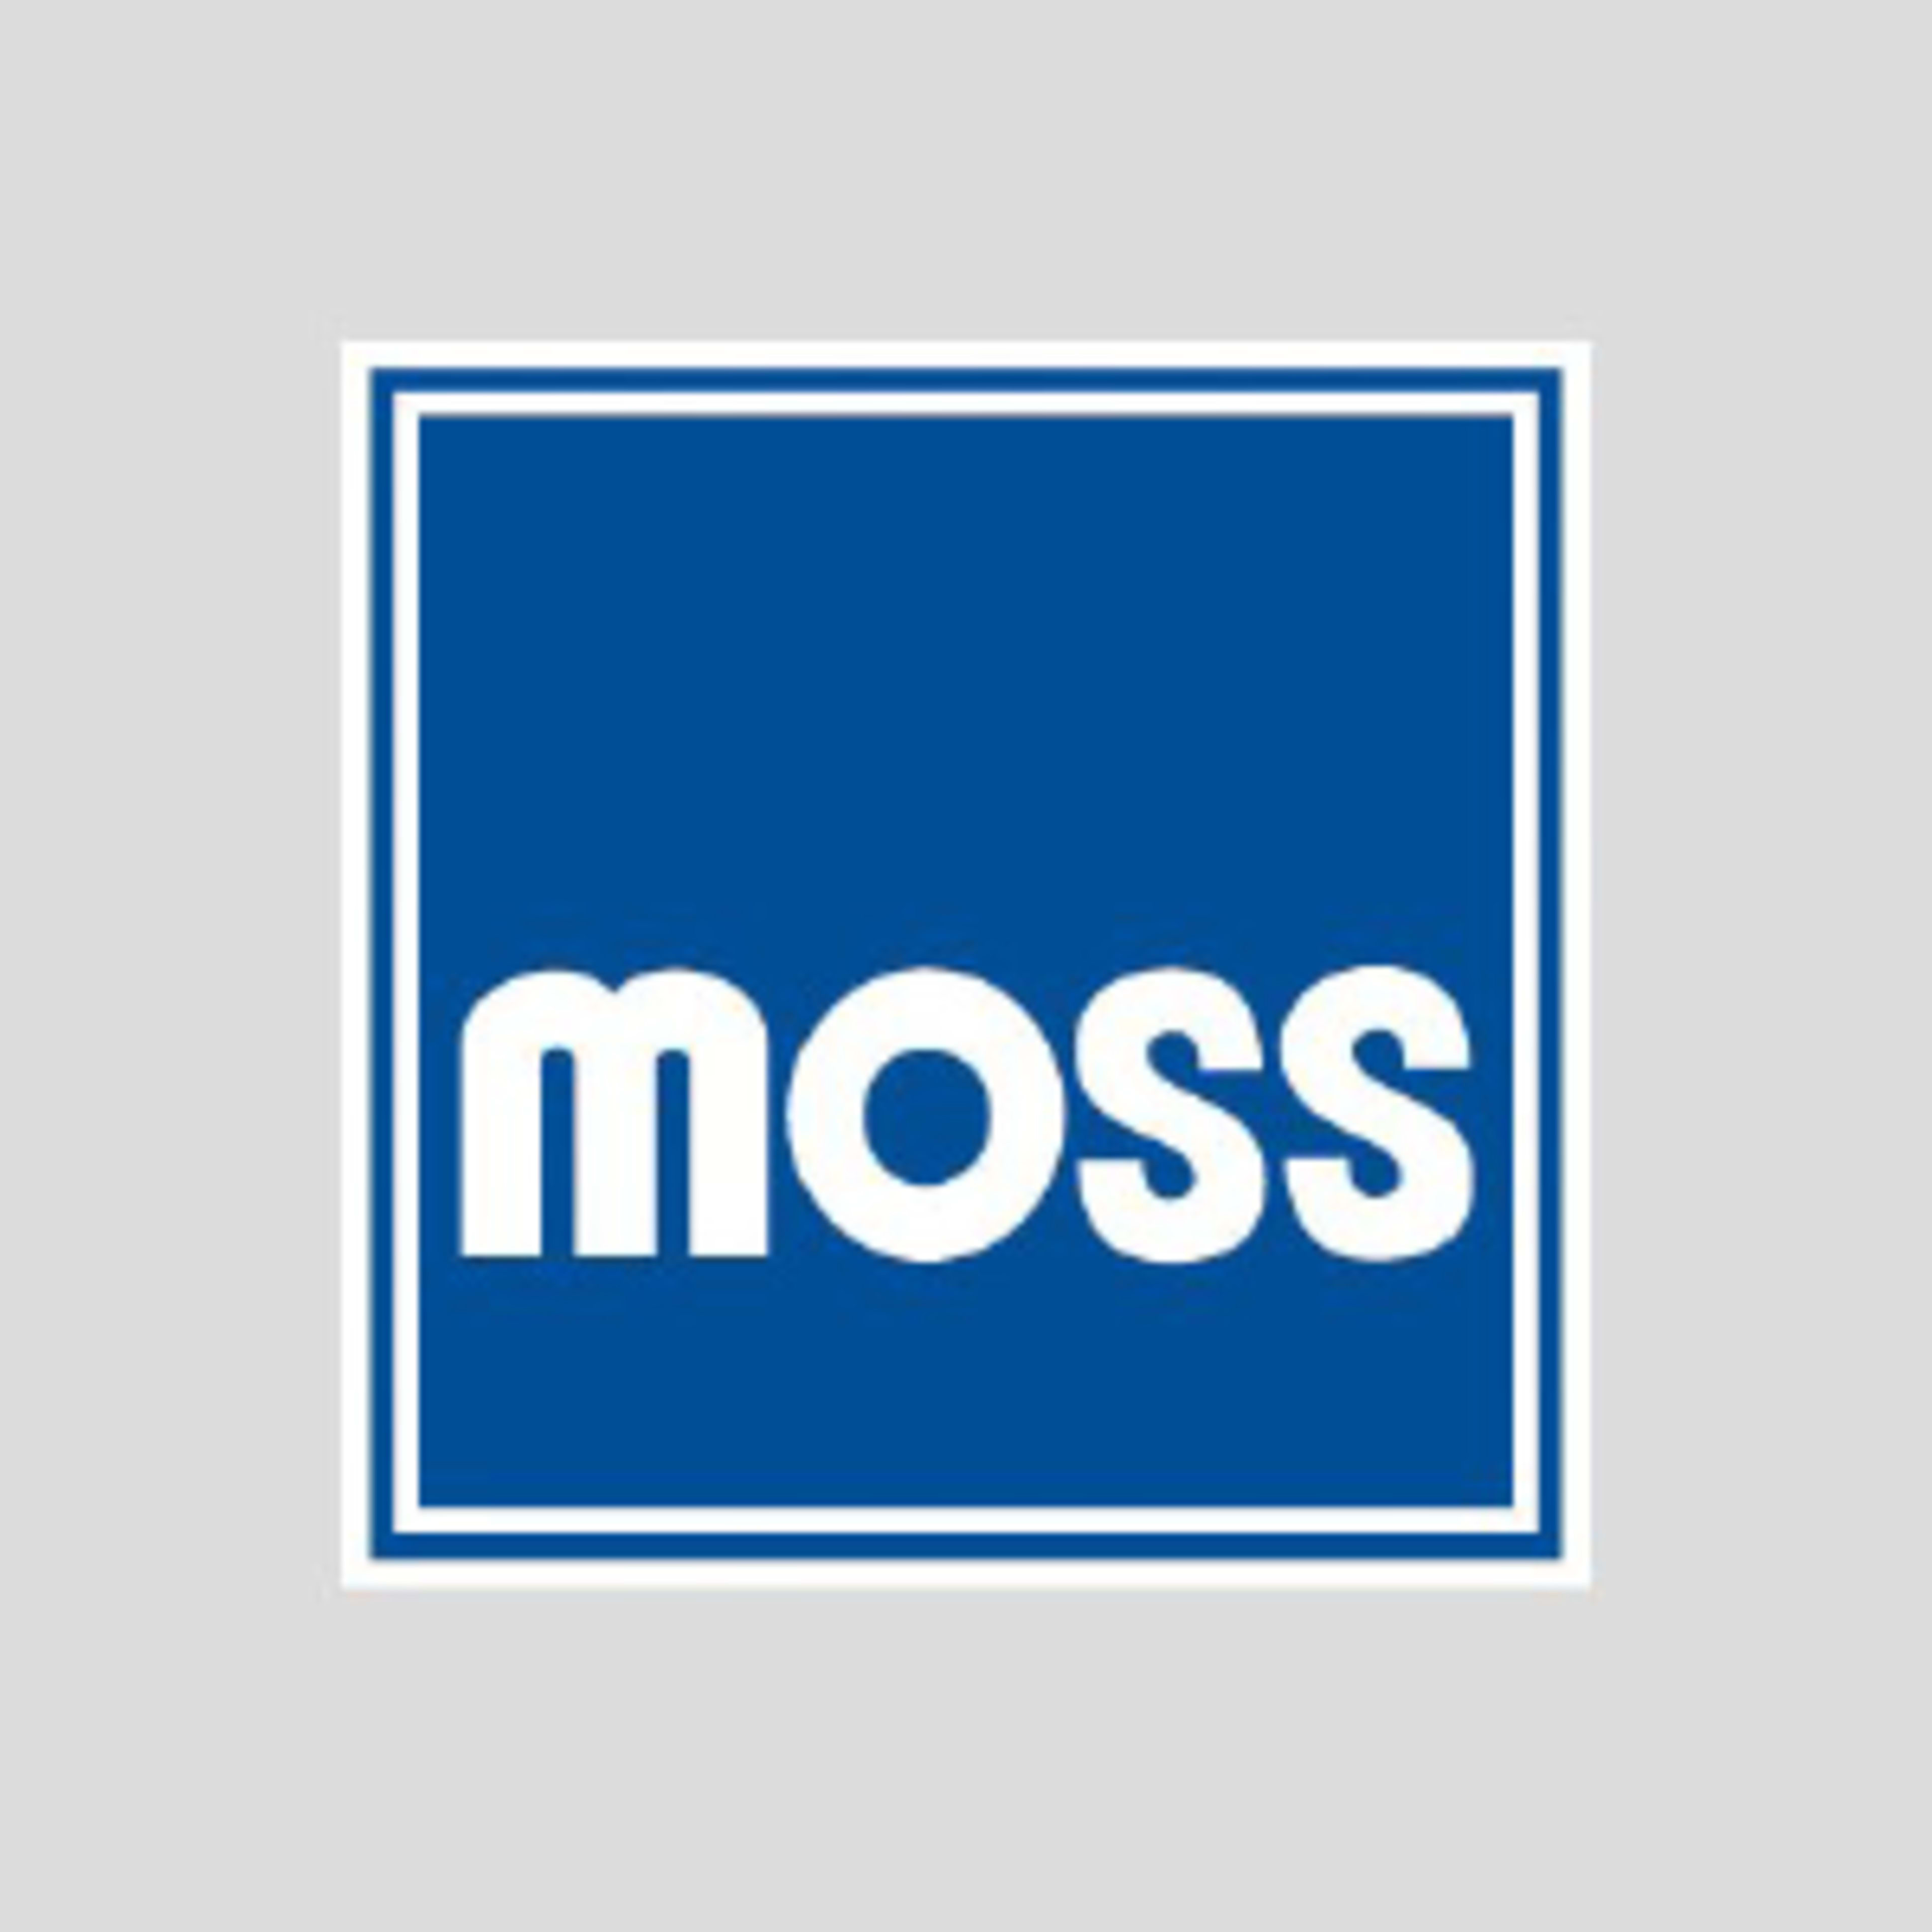 Moss MotorsCode